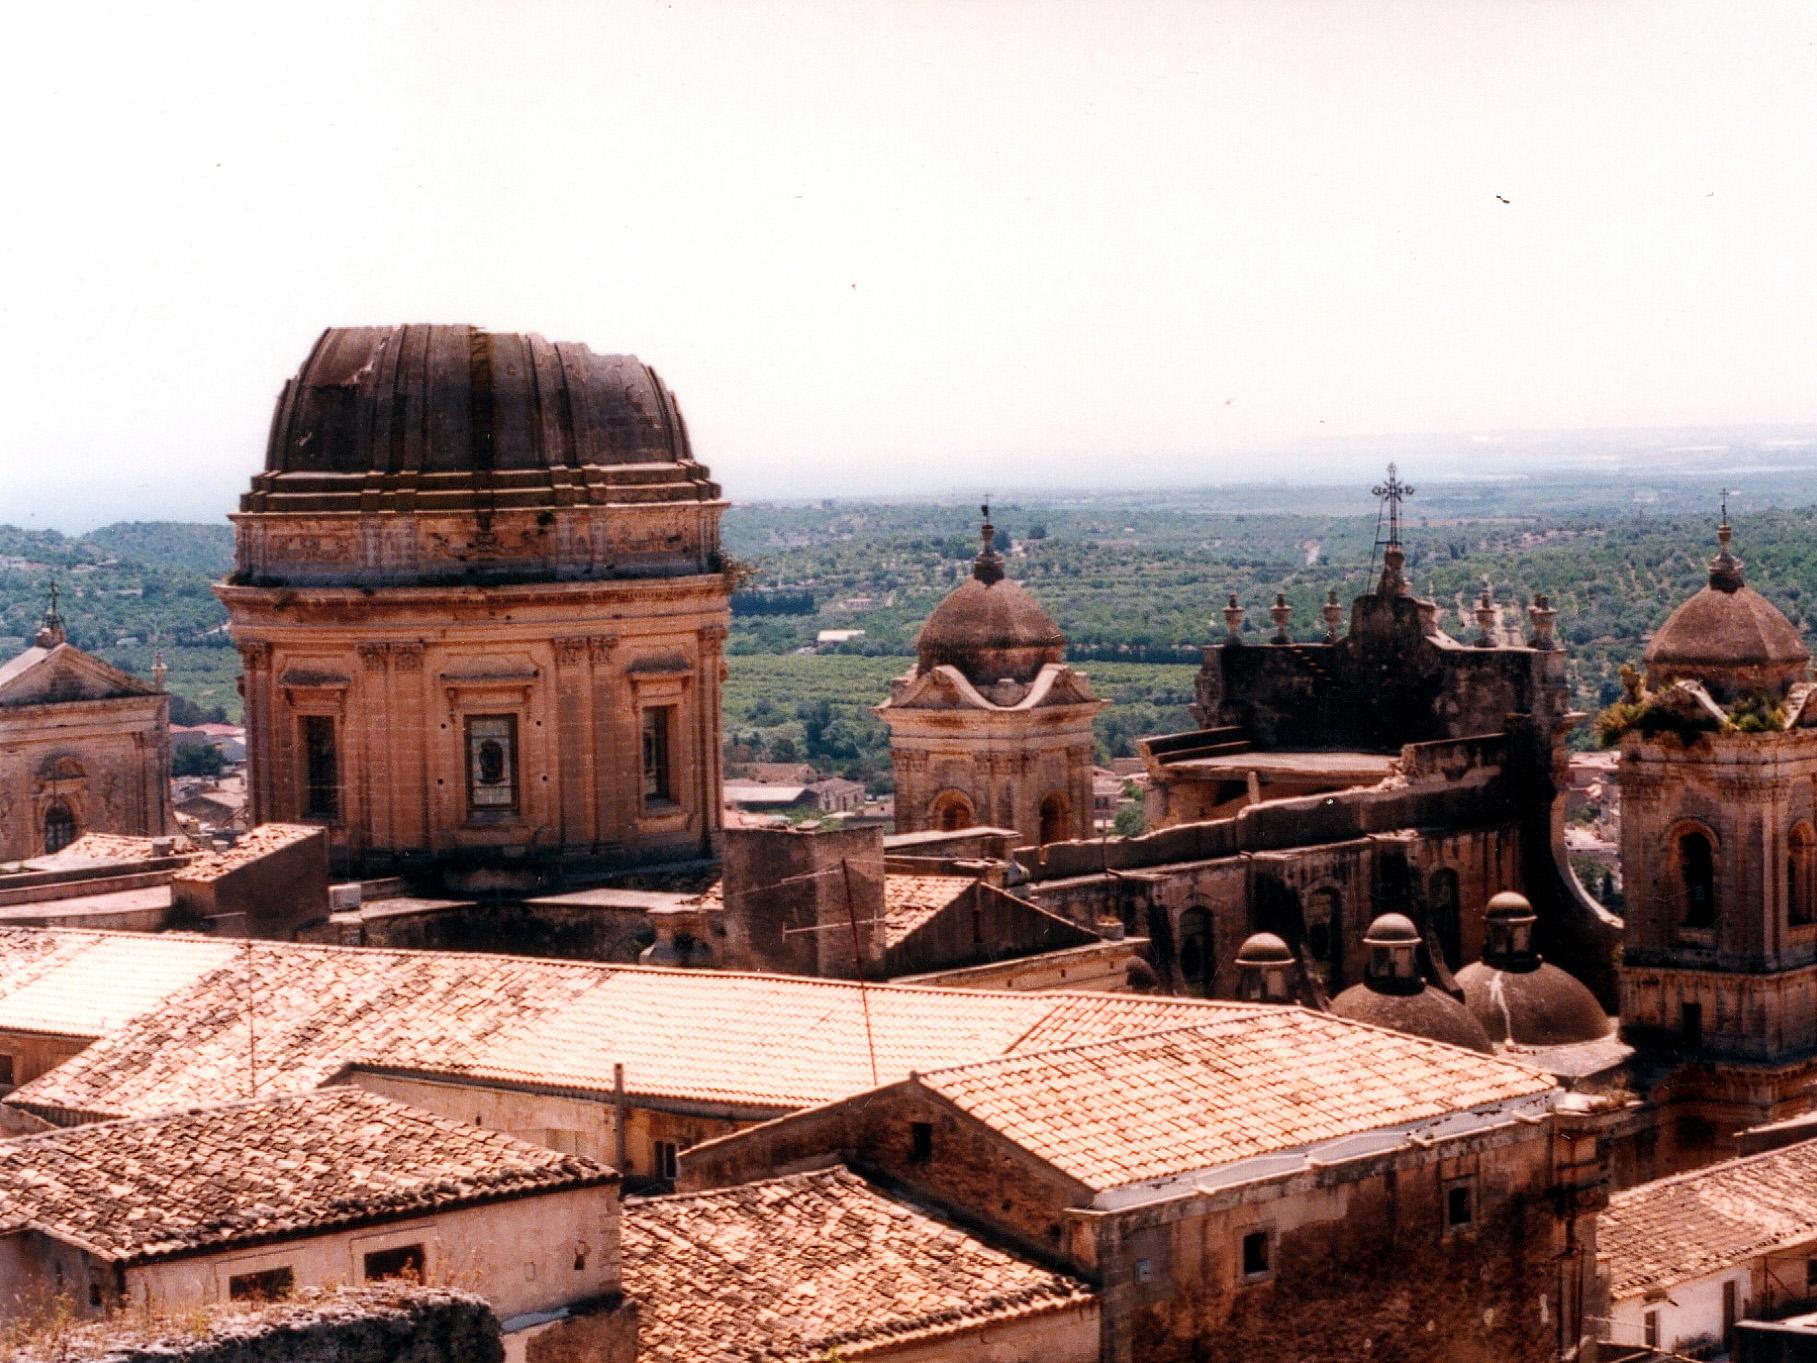 La cupola crollata della cattedrale di Noto (1996)